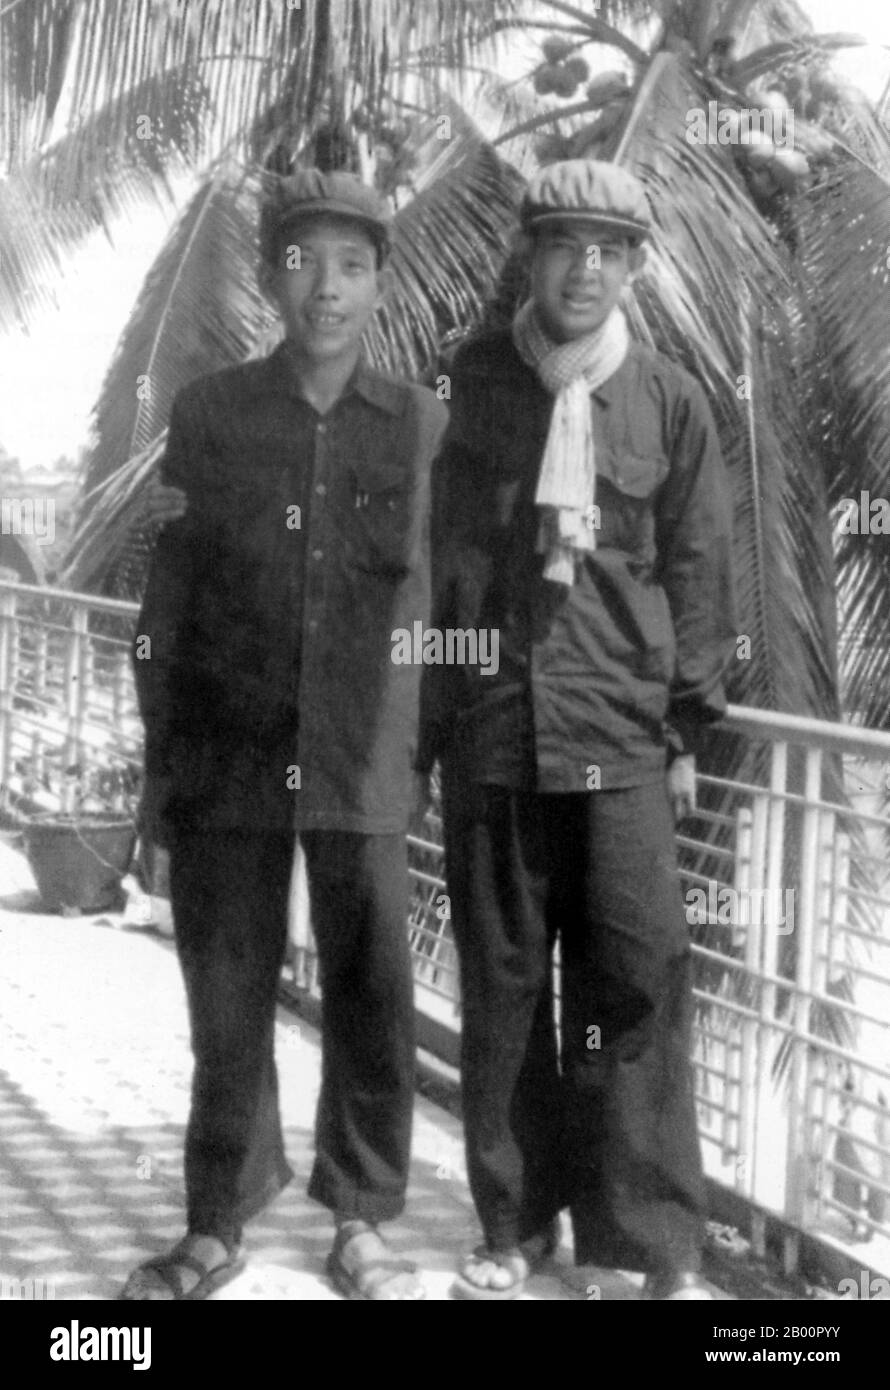 Kambodscha: Kang Kek IEW (Genosse Duch) links, mit seinem Boten, ca. 1977-78. Kang Kek IEW oder Kaing Kek Iev, Kaing Guek EAV (Genosse Duch oder Deuch), ein Sino-Khmer mit dem chinesischen Namen Hang Pin, wurde am 17. November 1942 im Dorf Choyaot, Kampong Chen, Provinz Kampong Thom, geboren. Er ist am besten dafür bekannt, den Sonderzweig der Roten Khmer (Santebal) zu führen und das berüchtigte Tuol Sleng (S-21) Gefangenenlager in Phnom Penh zu führen. Er war der erste Führer der Roten Khmer, der von den Sonderkammern in den Gerichten Kambodschas wegen der Verbrechen des Regimes angeklagt und verurteilt wurde. Stockfoto